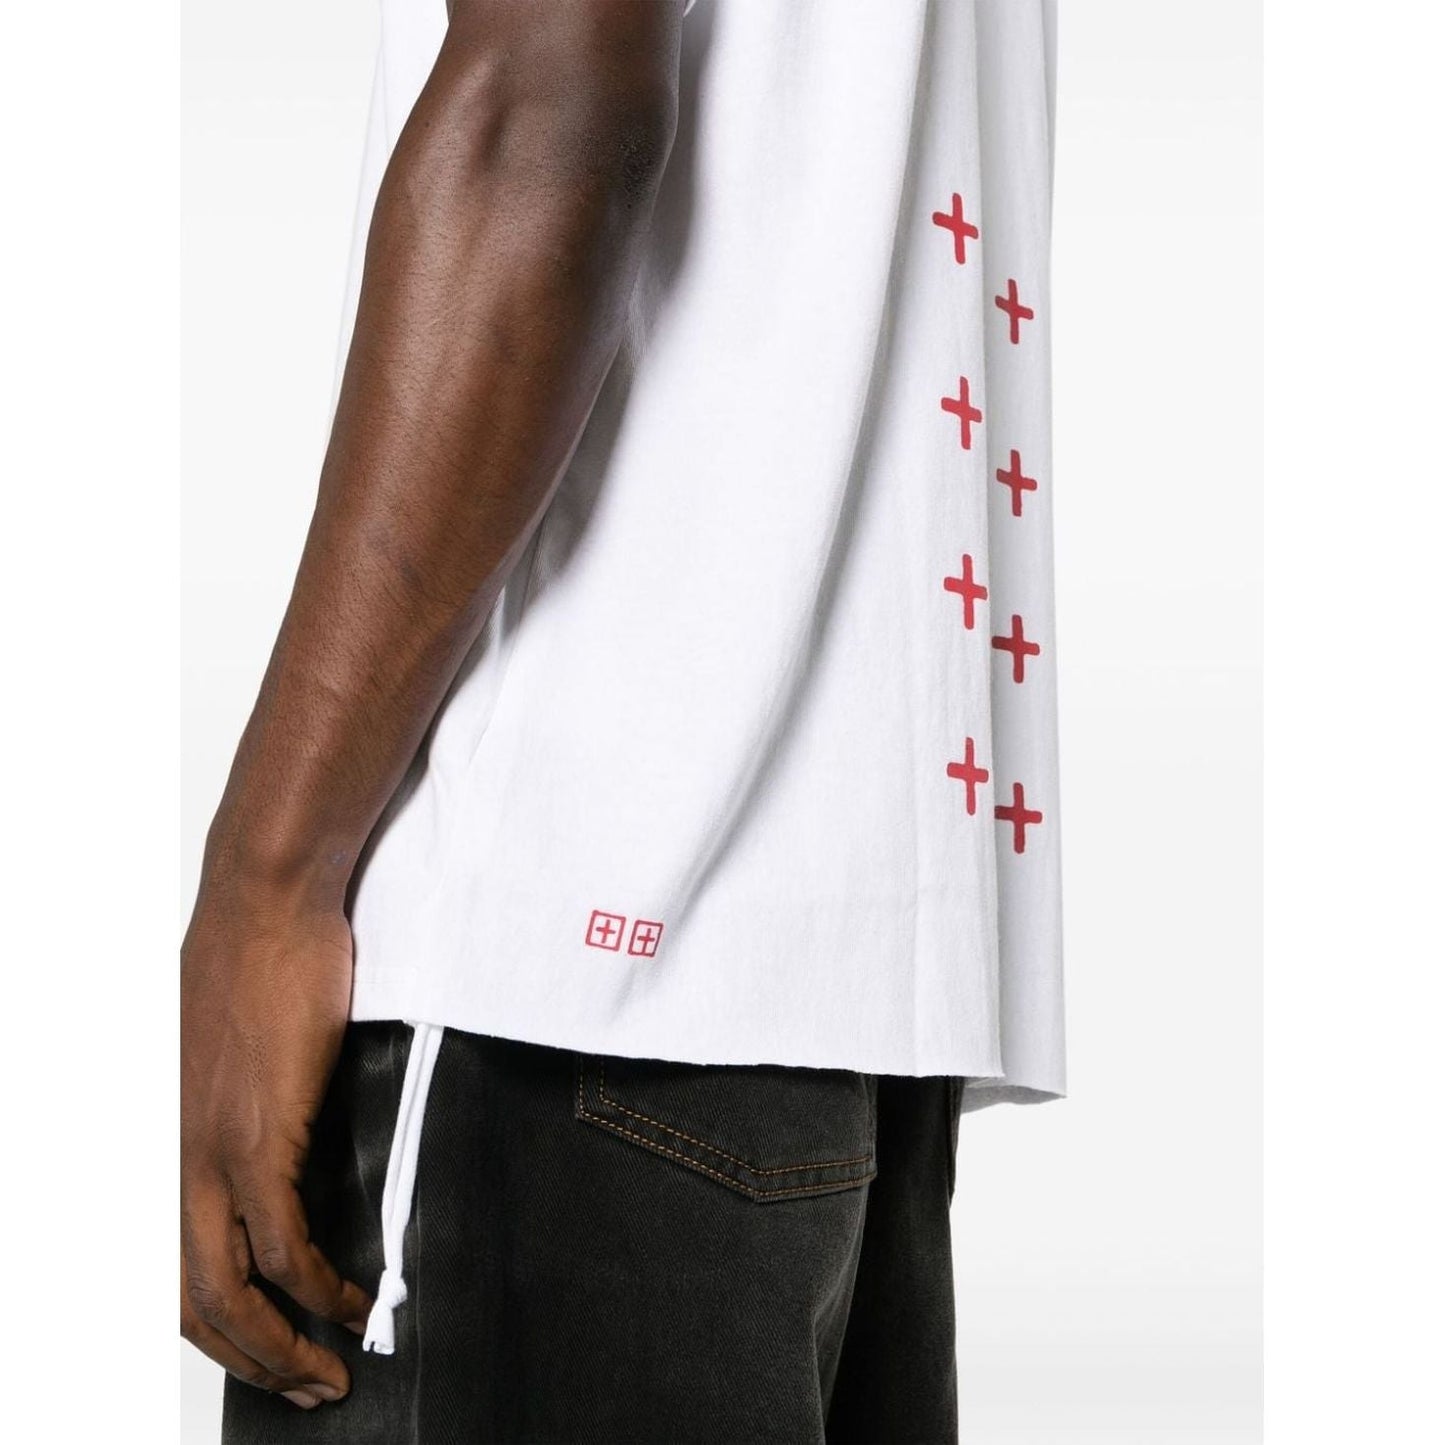 KSUBI vyriški balti marškinėliai trumpomis rankovėmis 4x4 biggie ss tee white/red